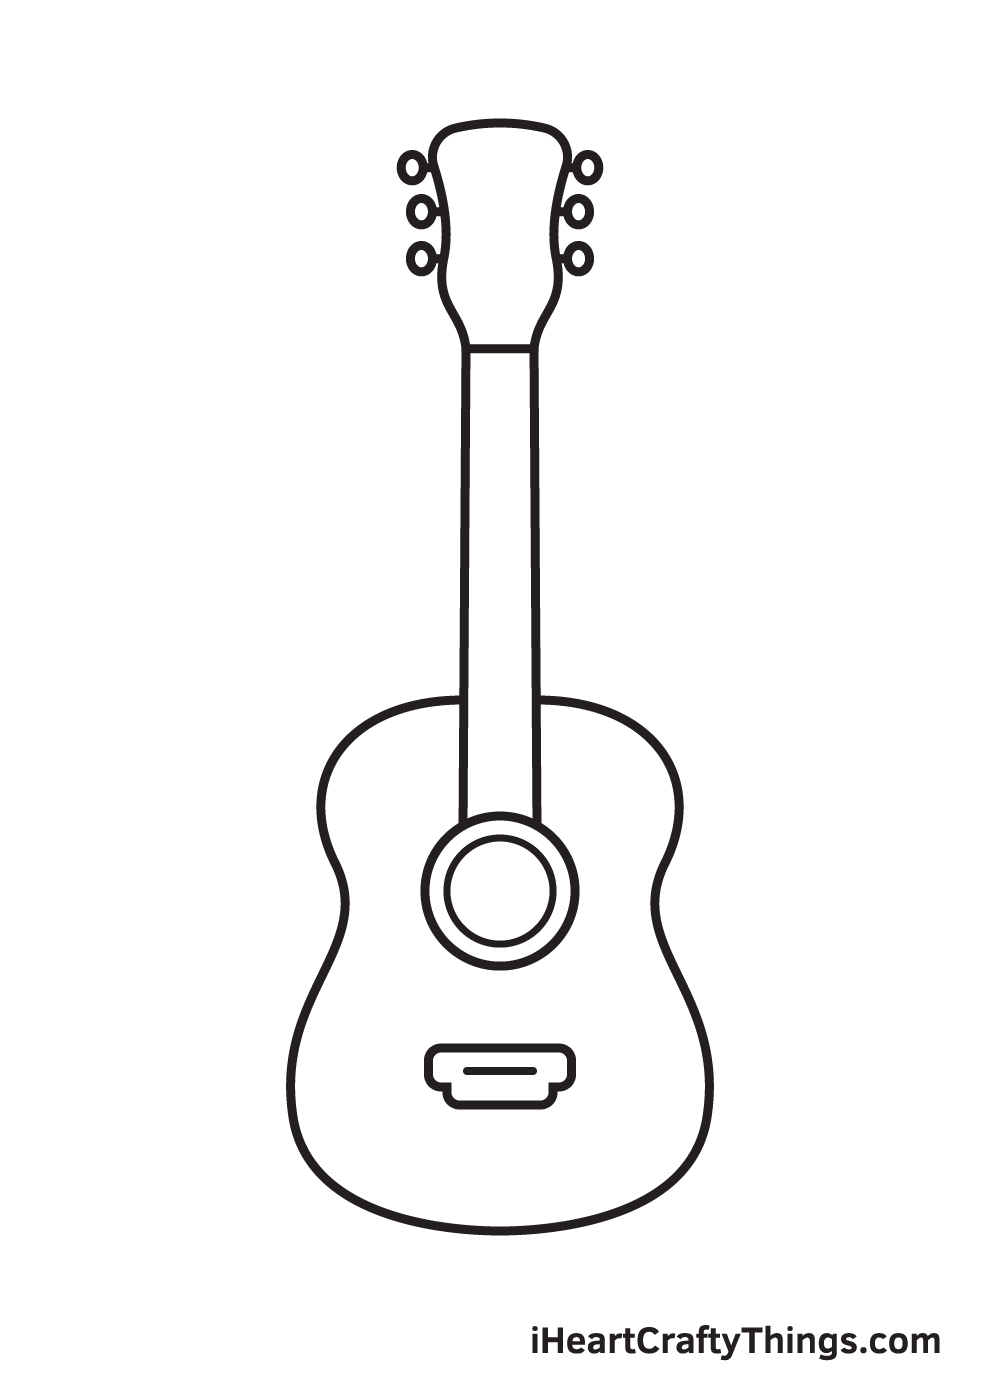 Guitar Drawing – Step 7